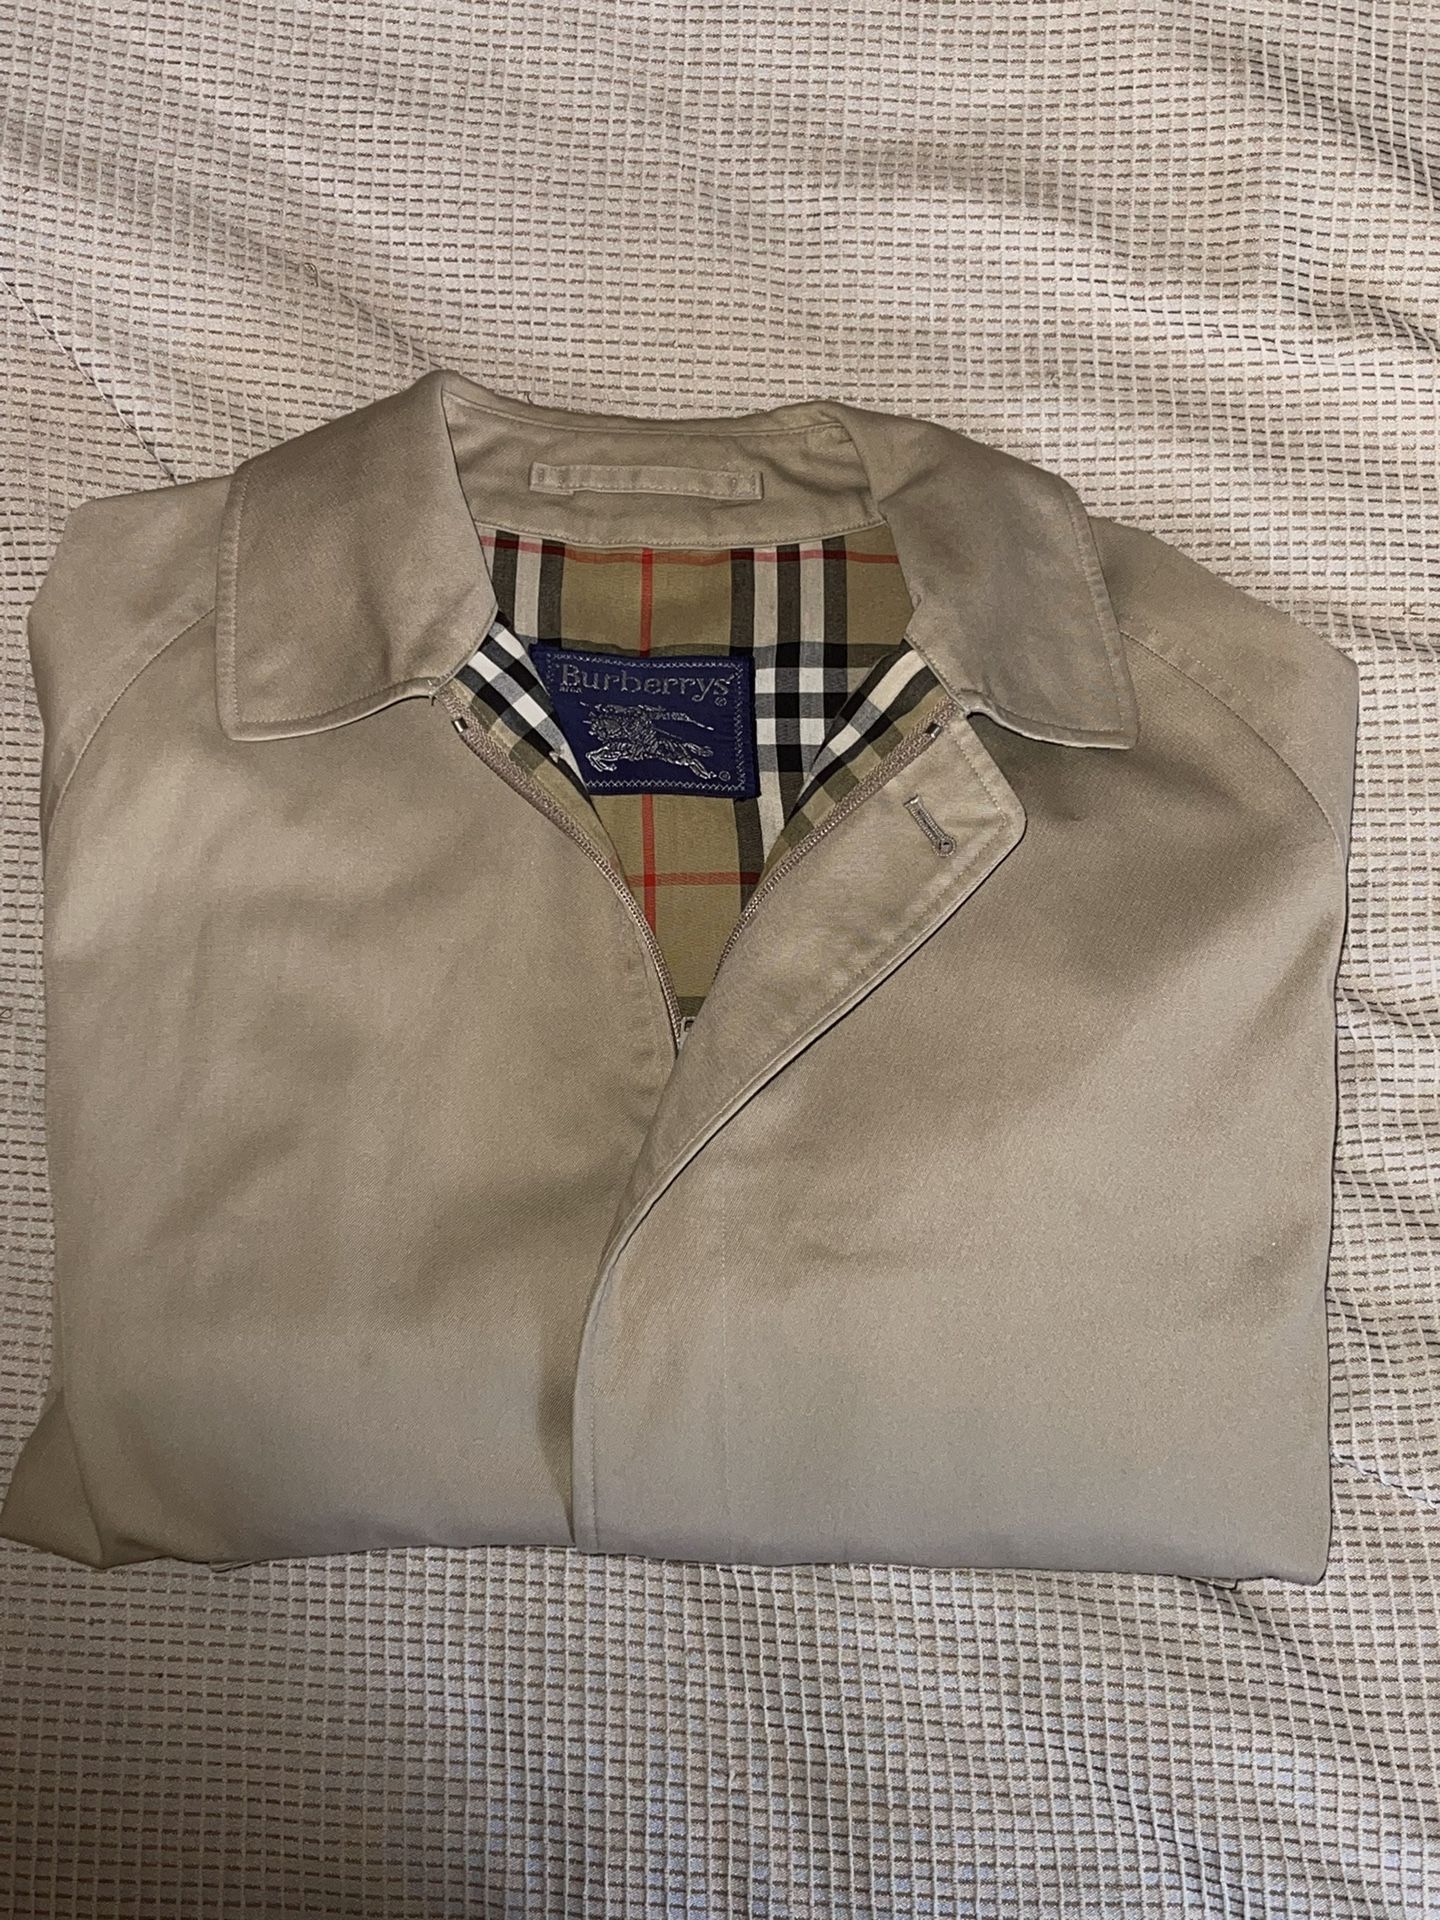 Burberry’s Vintage Zip Up Jacket 